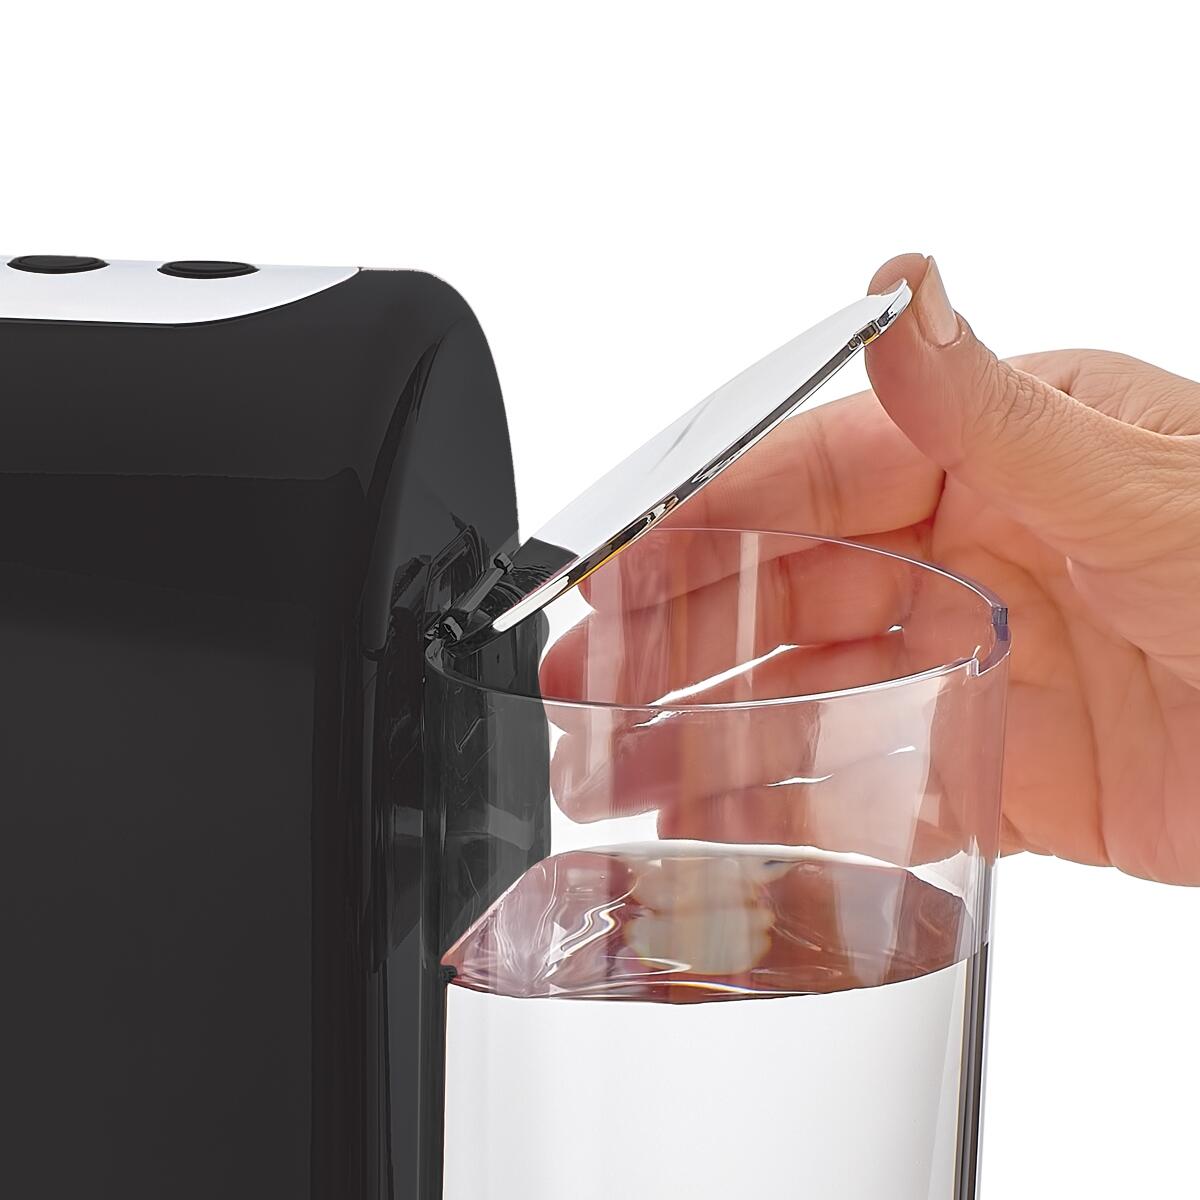 Korkmaz Kahvekolik Aqua Siyah/Krom Otomatik Kahve Makinesi - 4